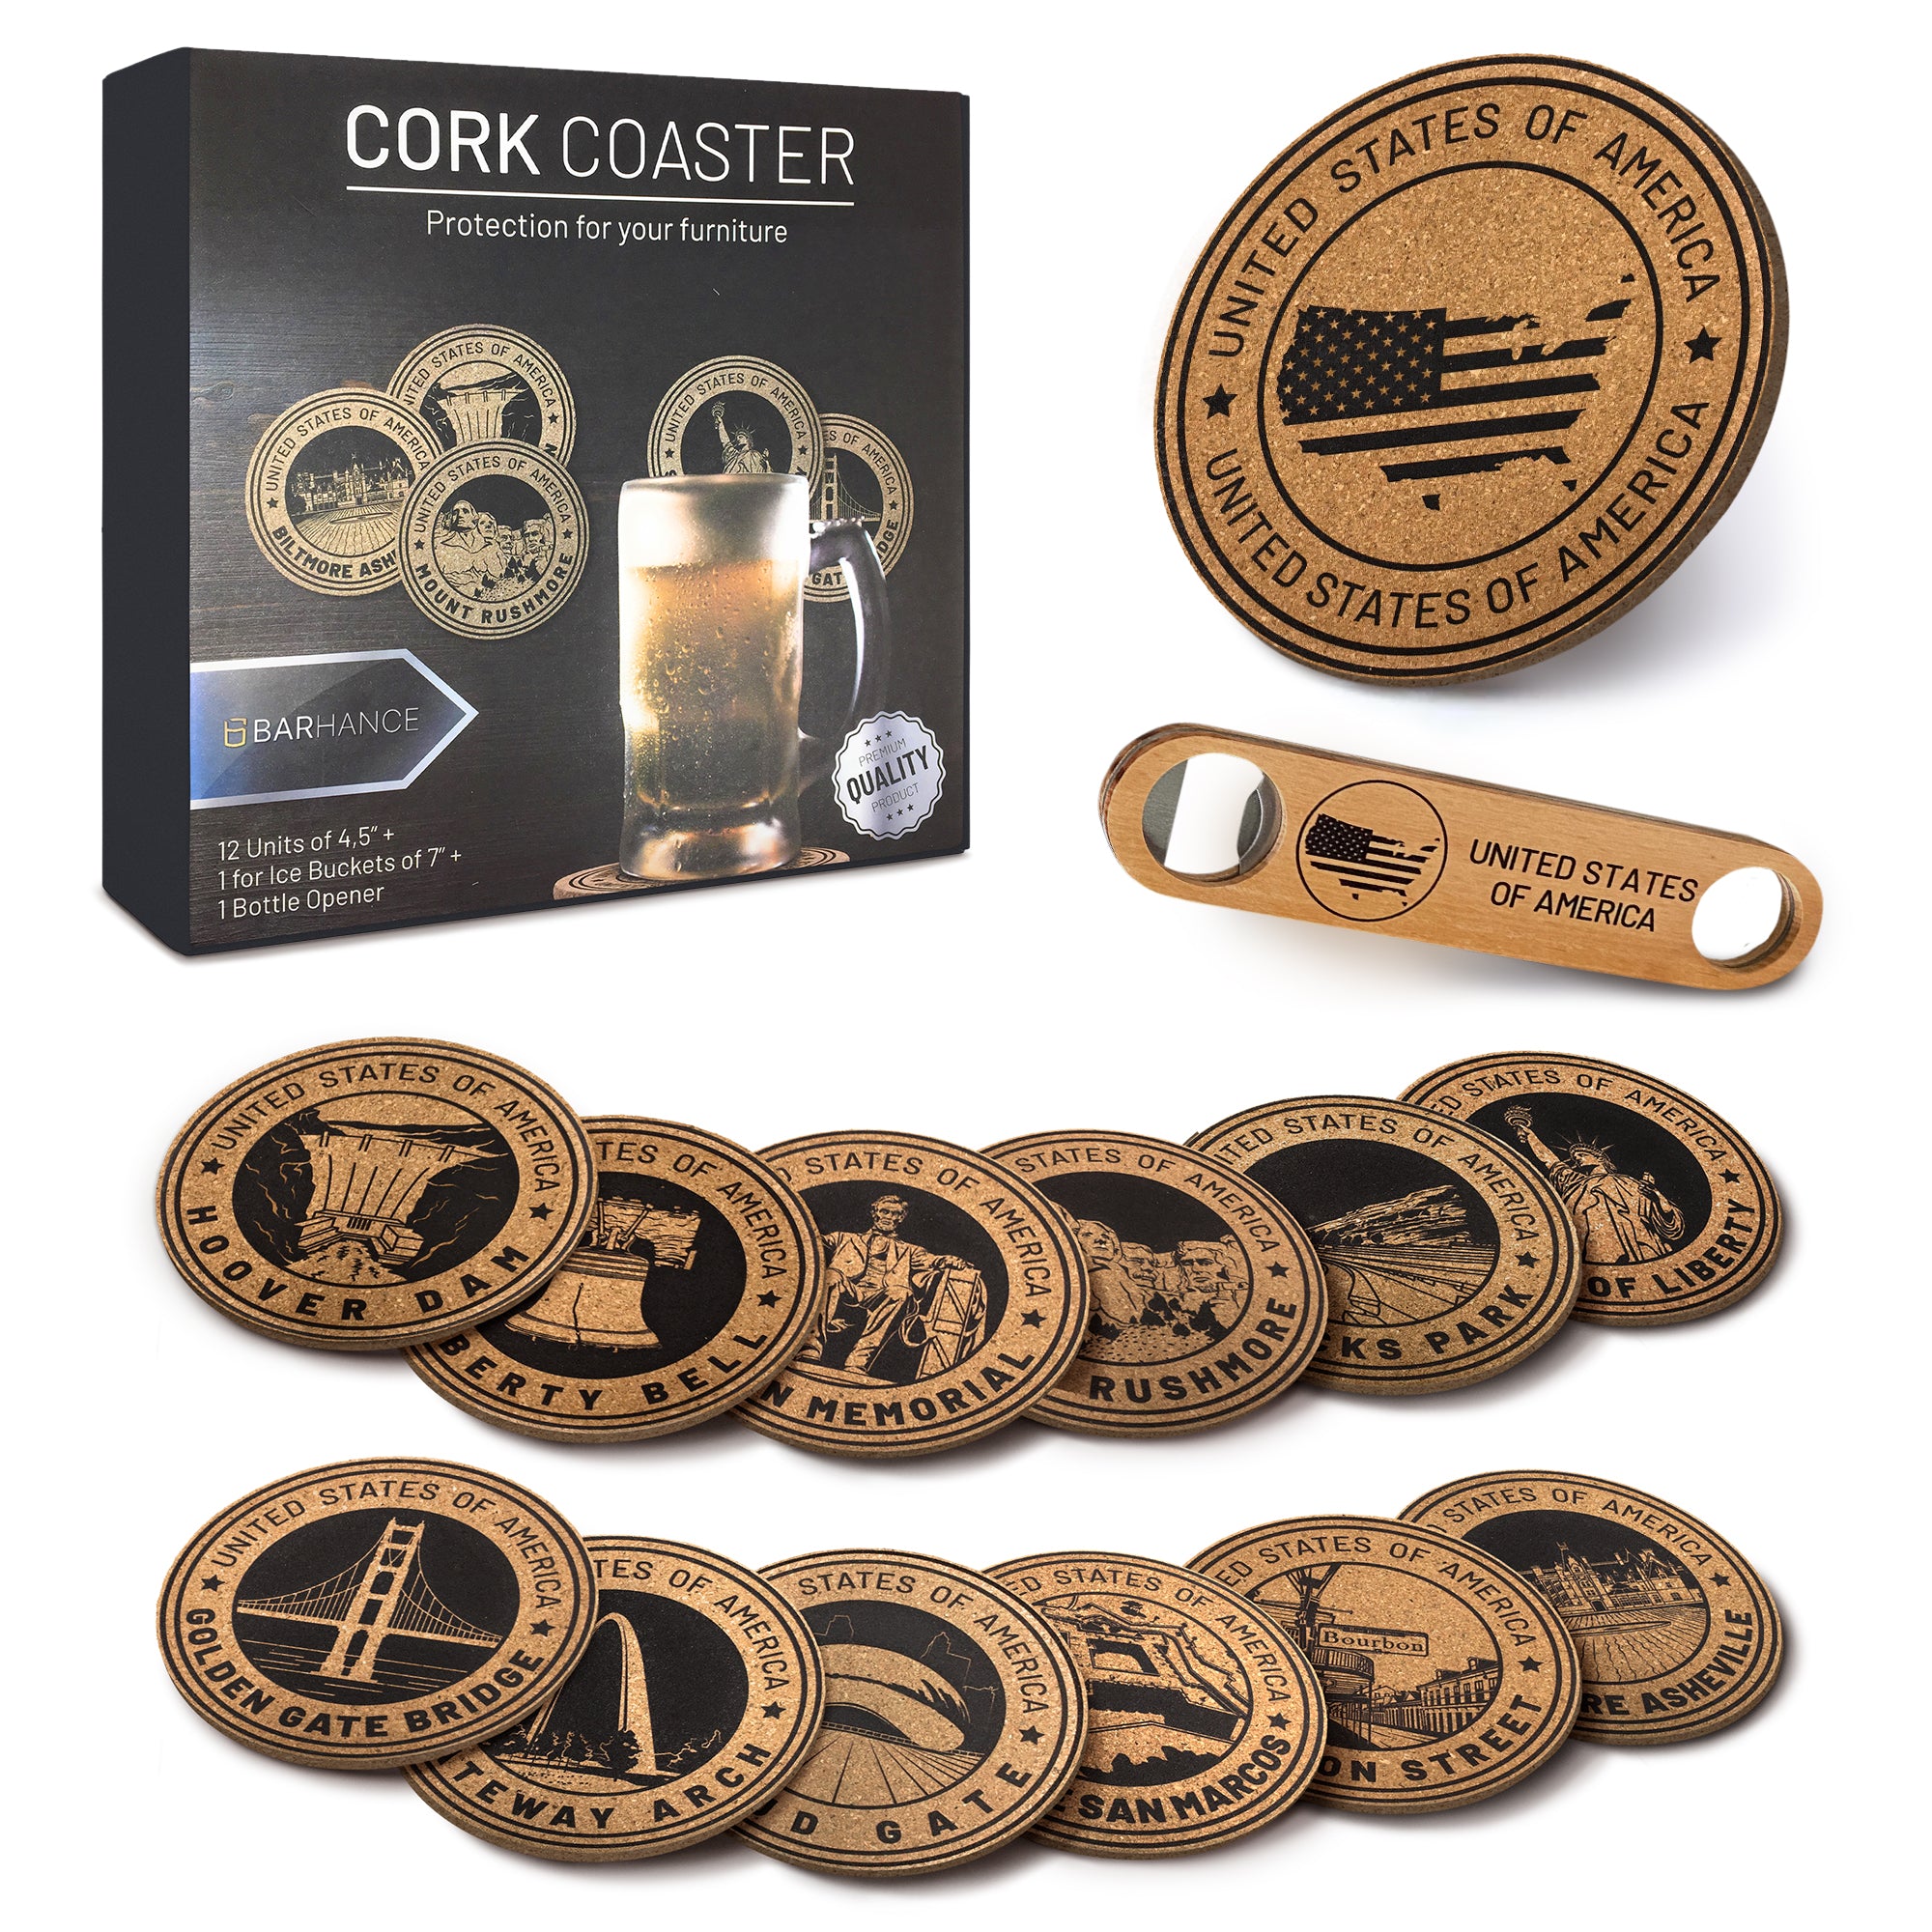 Cork Coaster – Barhance